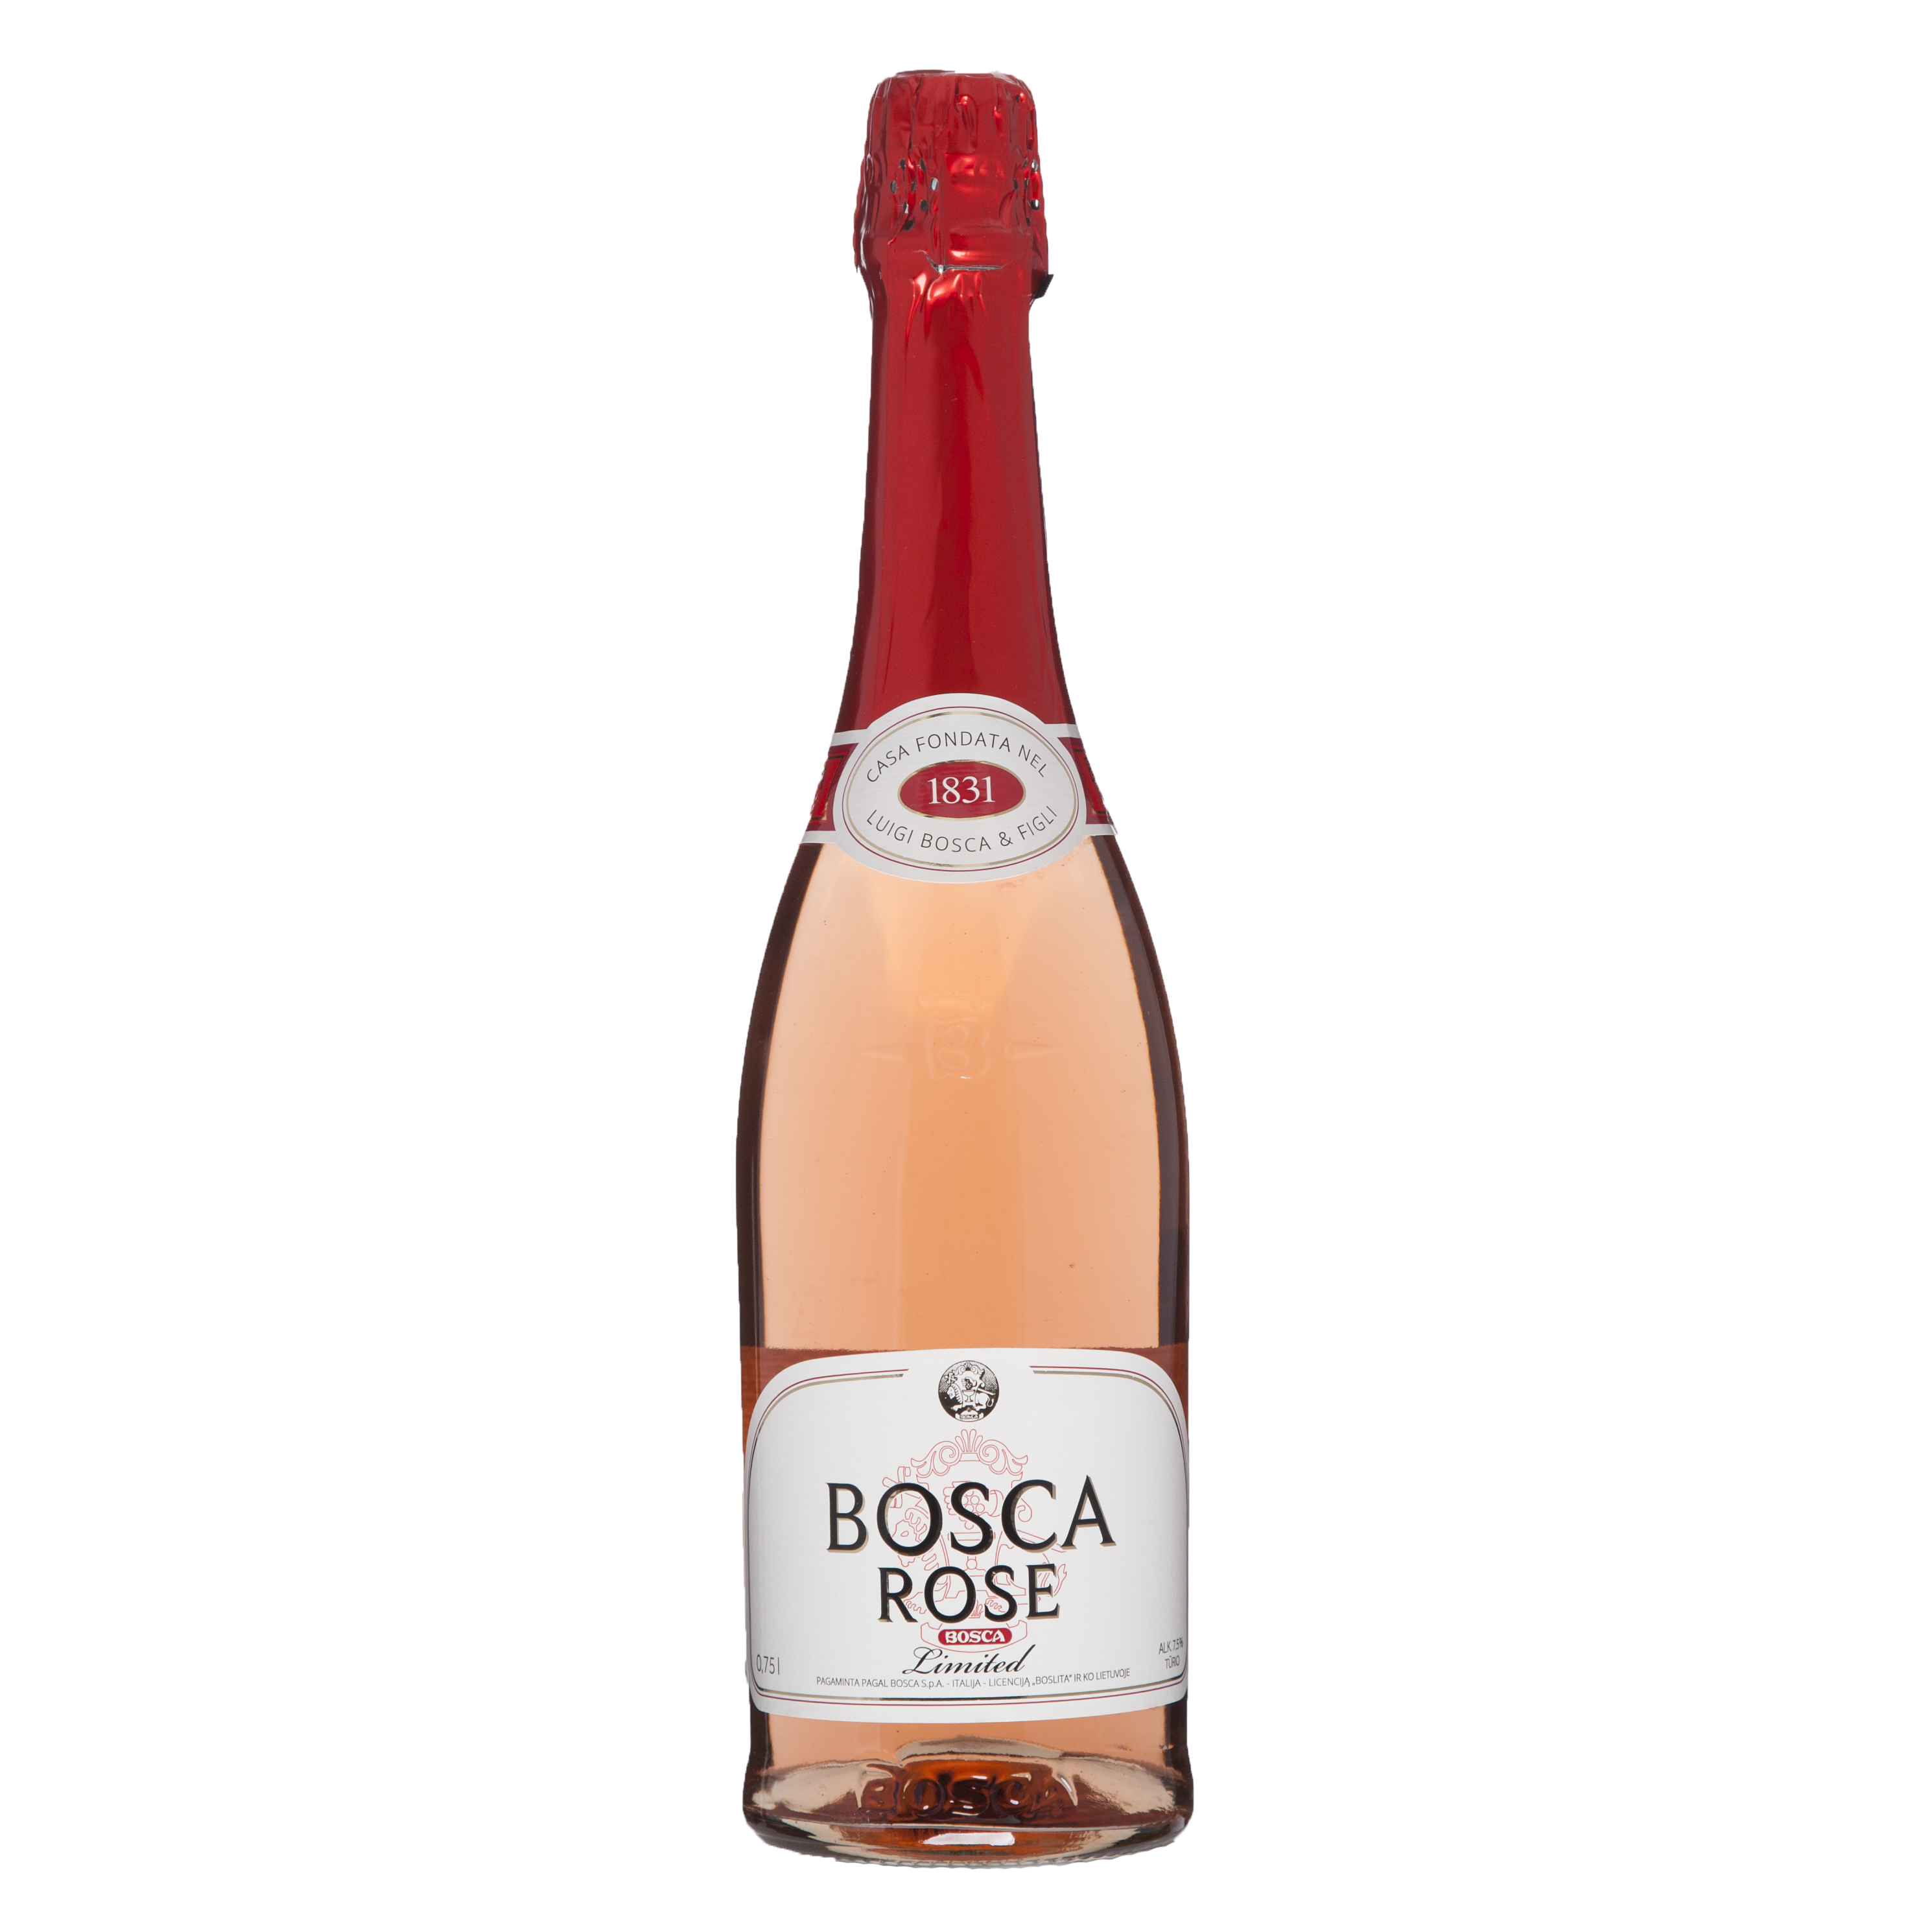 Боско напиток. Bosca Rose шампанское. Винный напиток "Bosca" Rose. Винный напиток Bosca Rose 0.75.